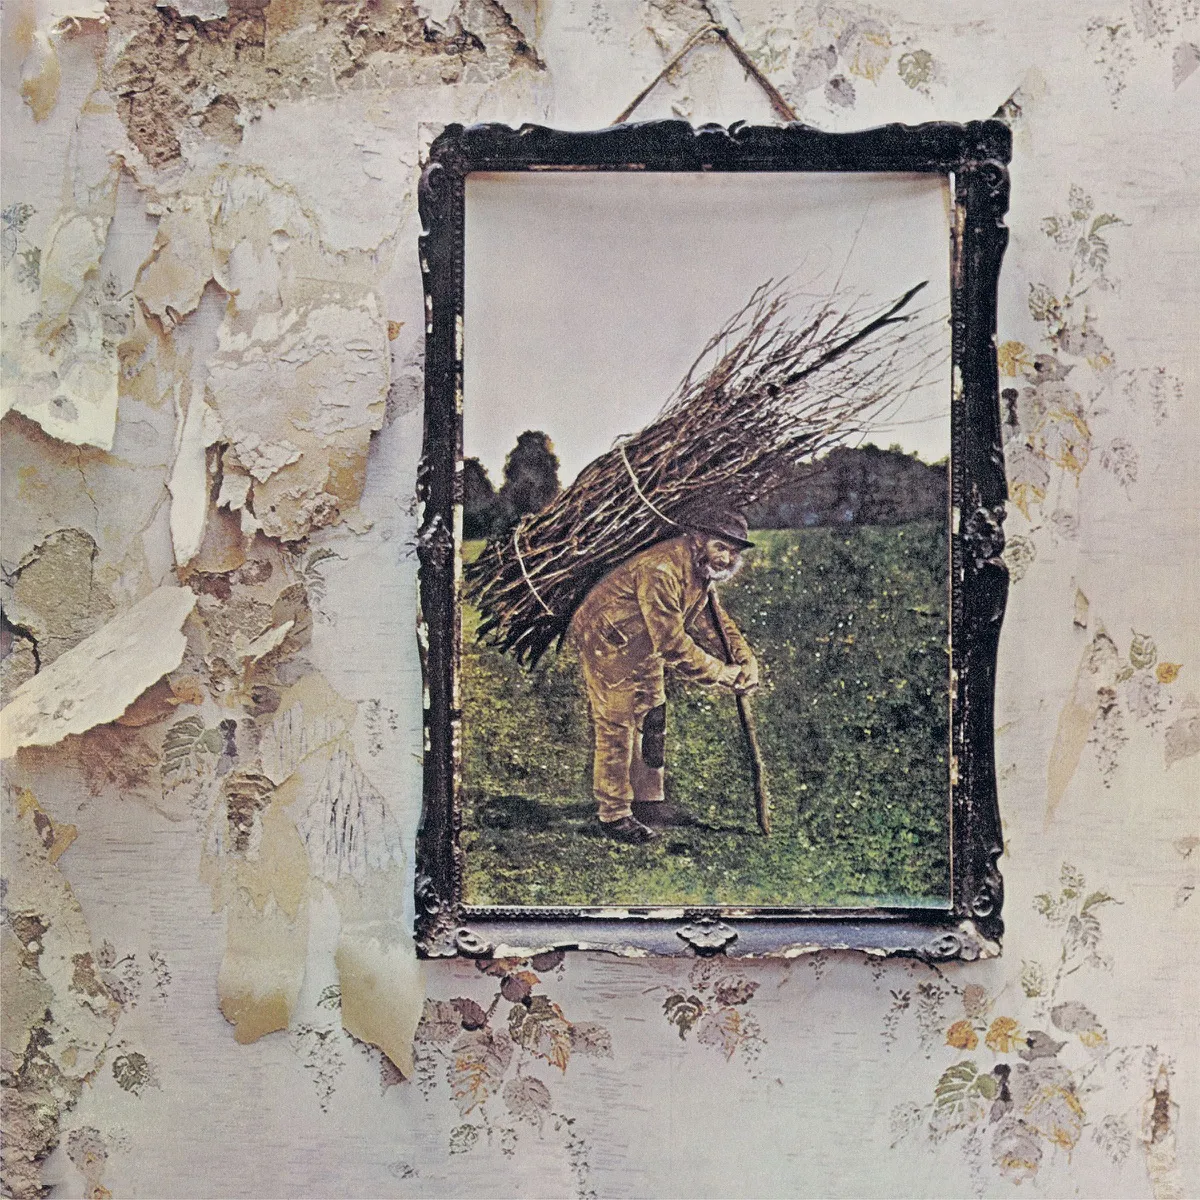 "Led Zeppelin IV [Remastered]" by Led Zeppelin album cover